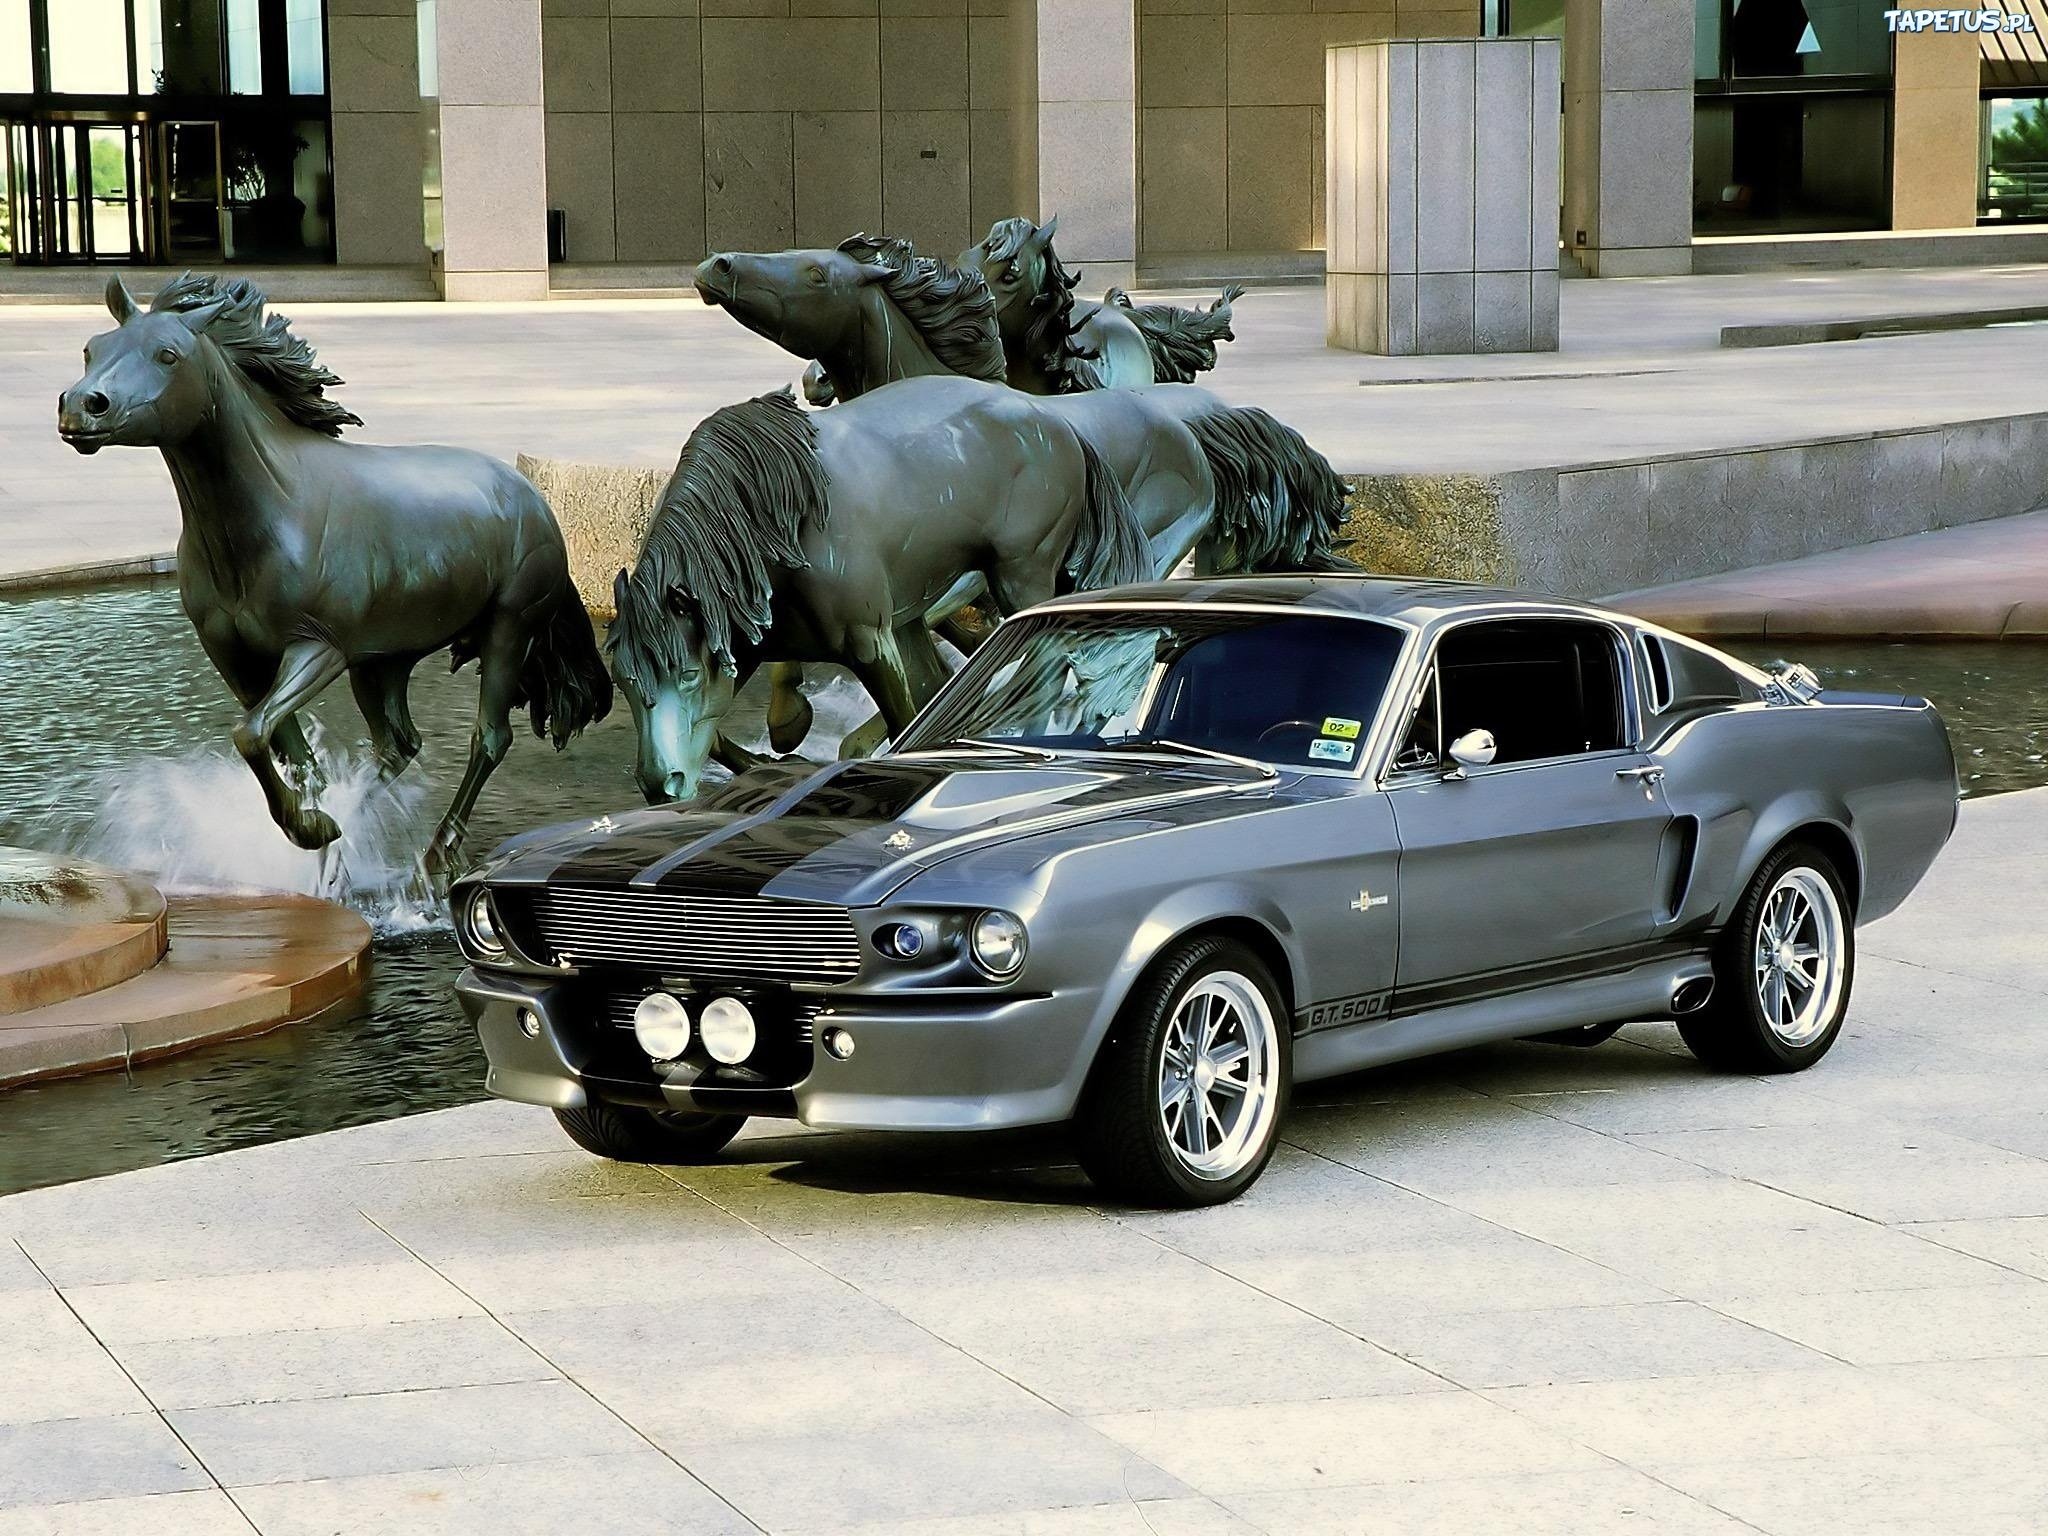 Машина с бегущей лошадью. Форд Мустанг Шелби gt 500 1967. Ford Mustang Shelby gt500 Eleanor 1967. Ford Mustang Shelby gt500 Eleanor.